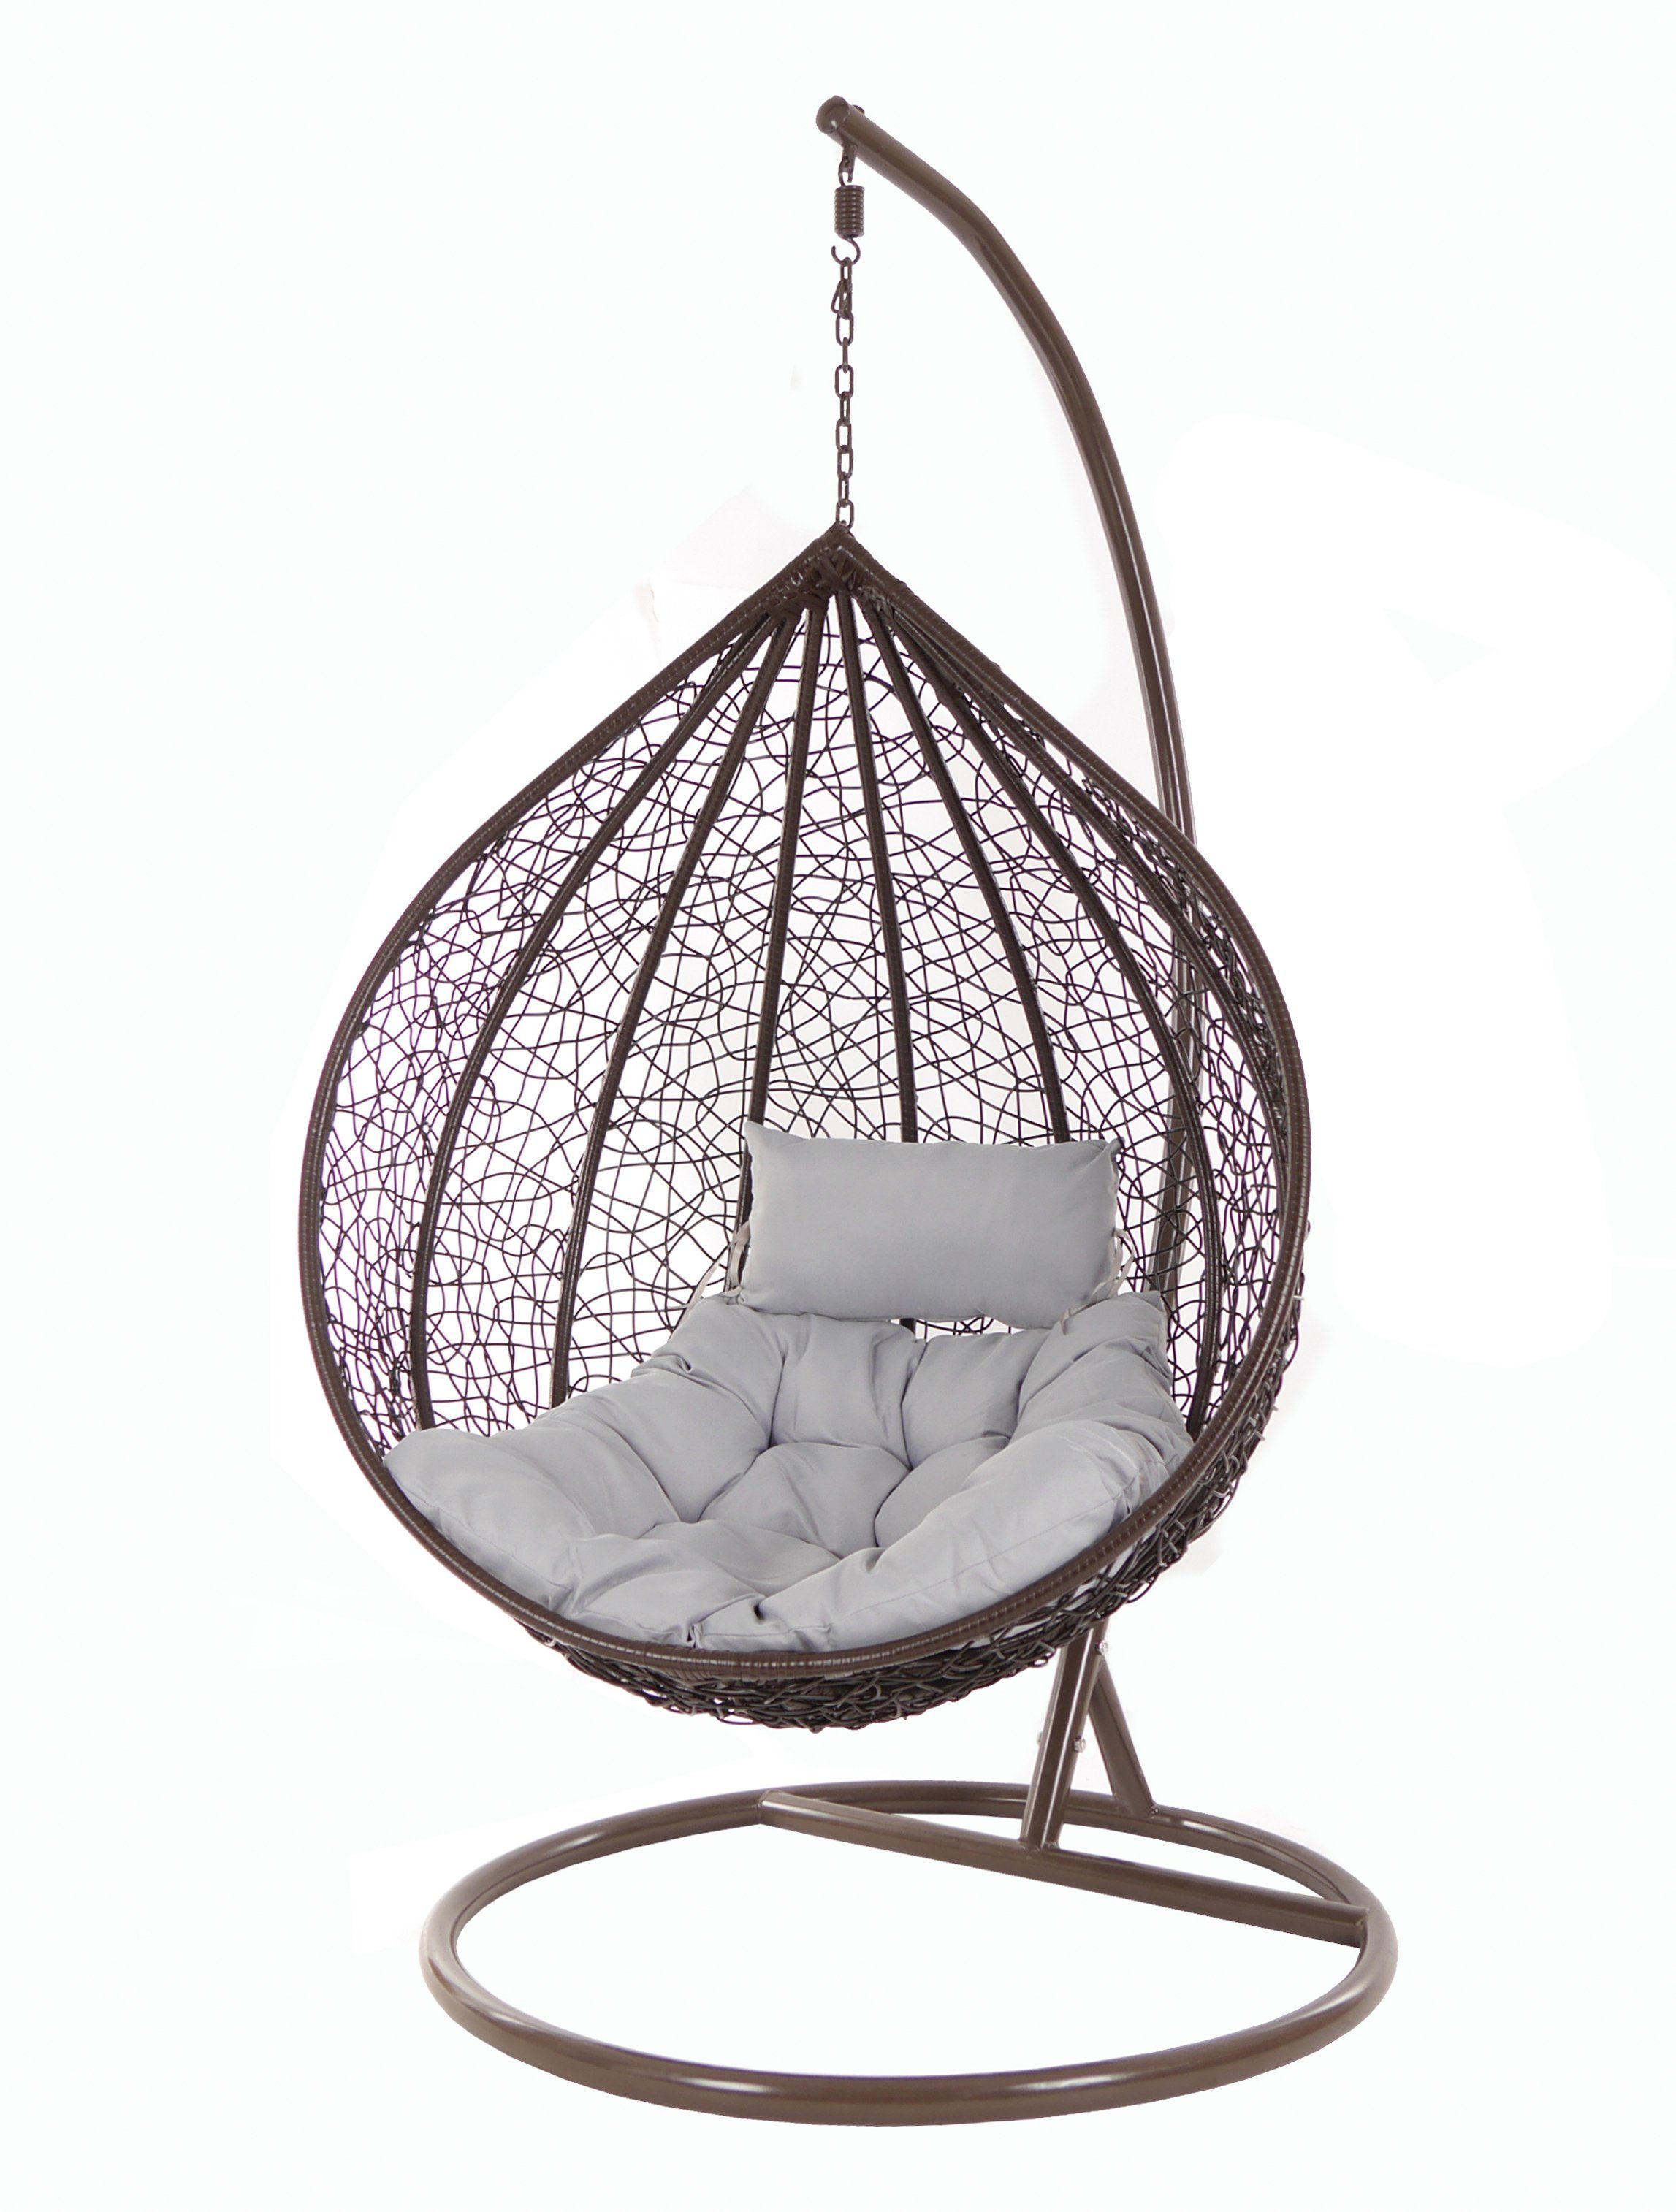 Kissen, Loungemöbel Chair, Hängesessel mit Gestell dunkelbraun, Hängesessel cloud) und darkbrown, grau (8008 Hängesessel KIDEO Swing MANACOR